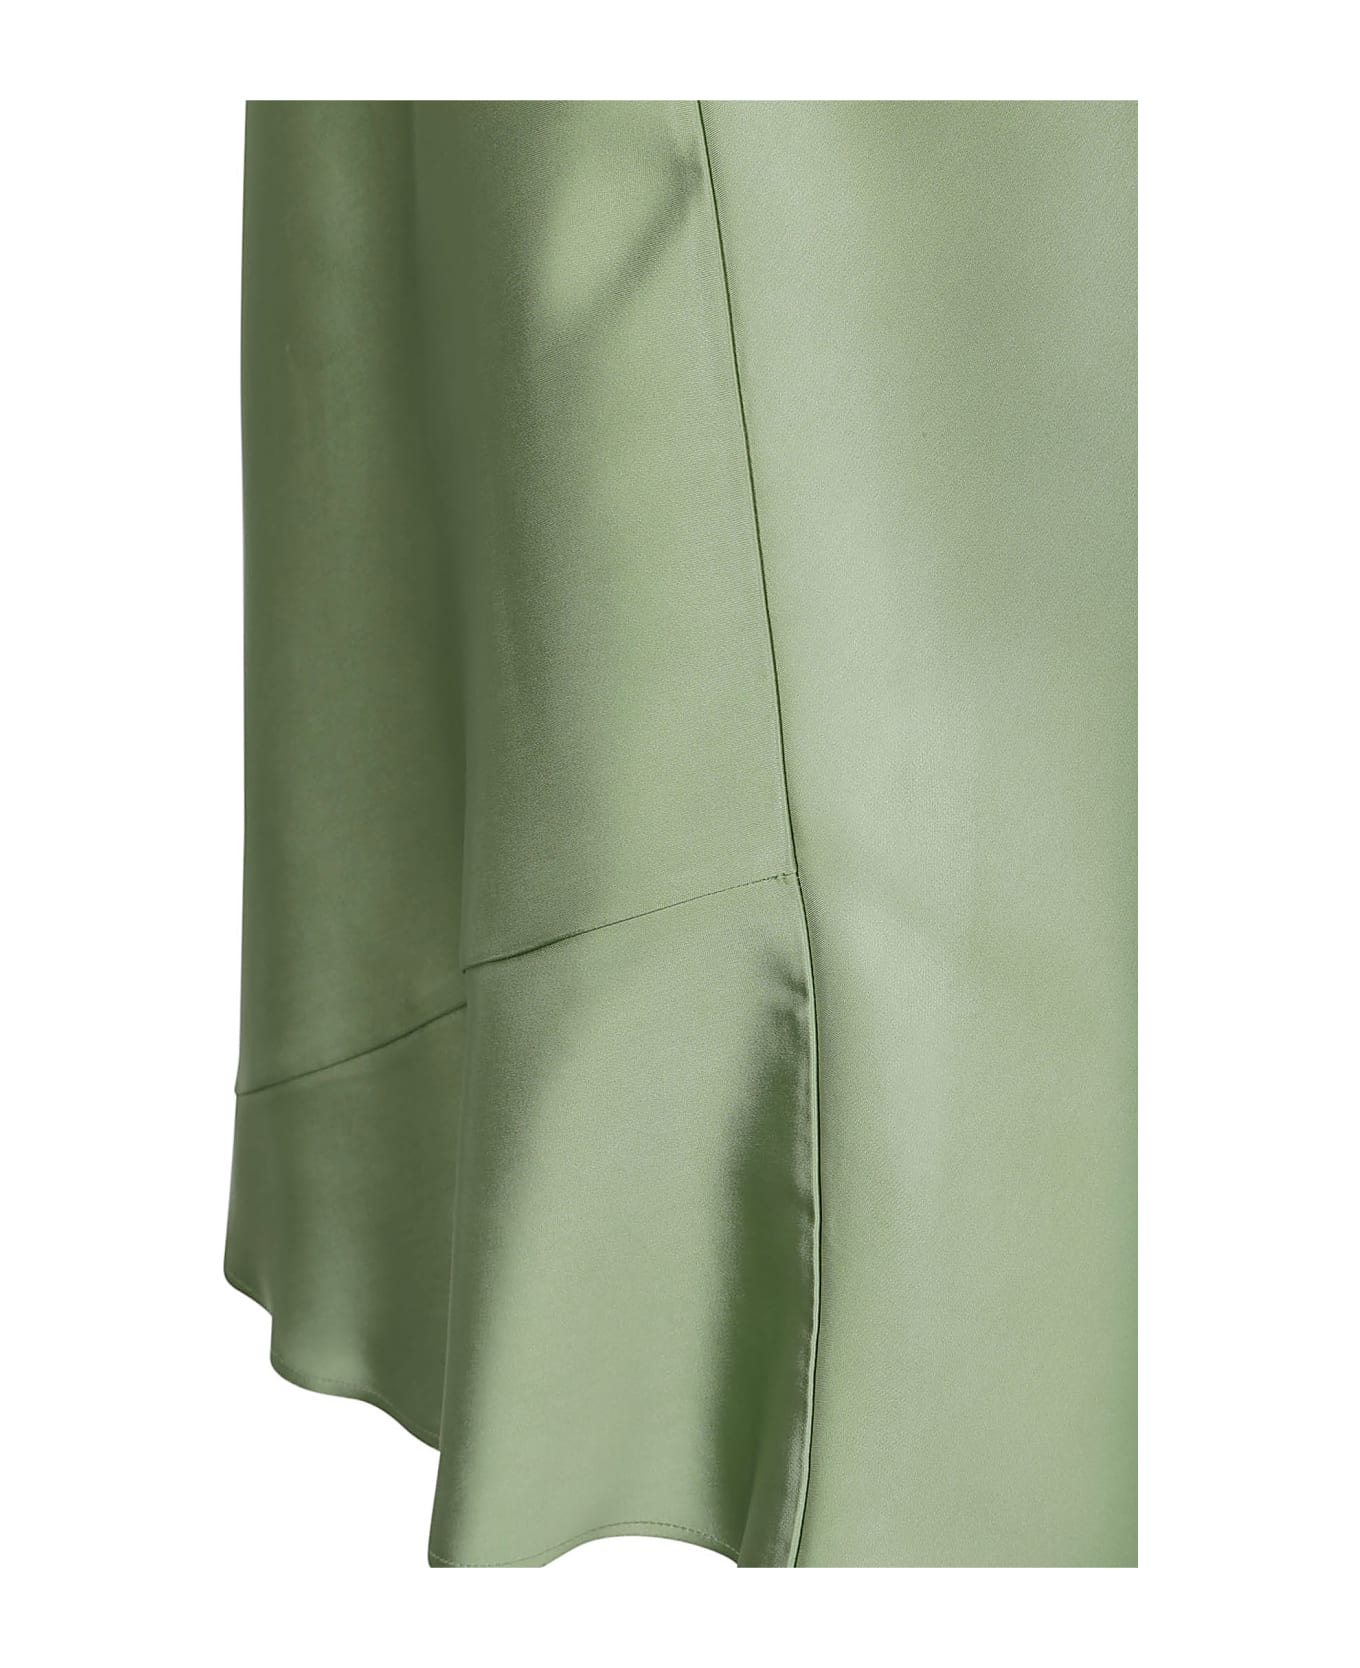 N.21 N°21 Skirts Green - Green